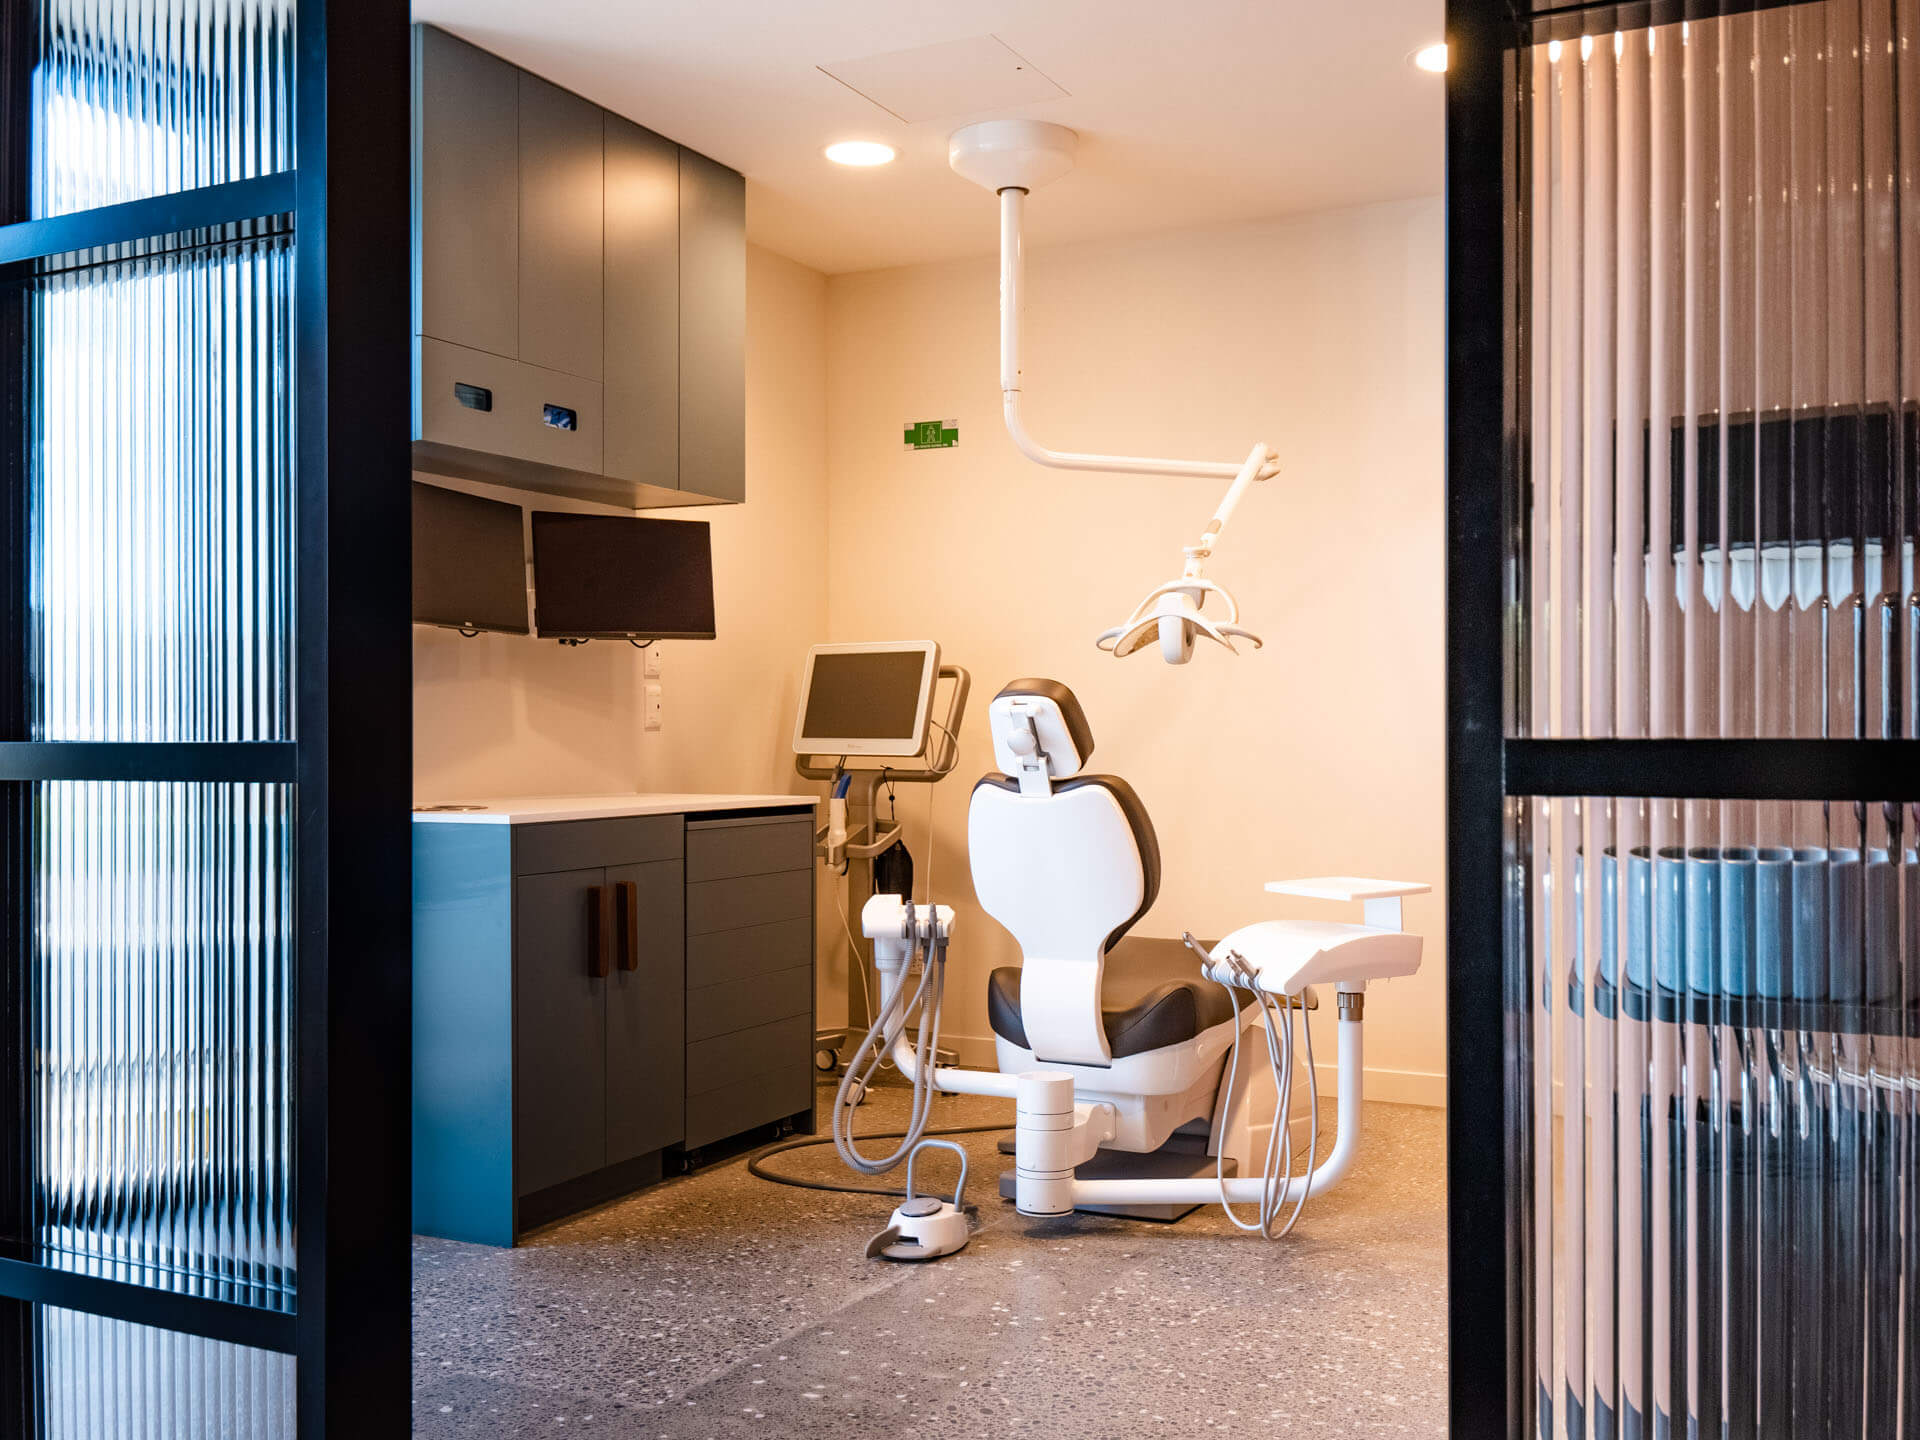 Orthodontic treatment room